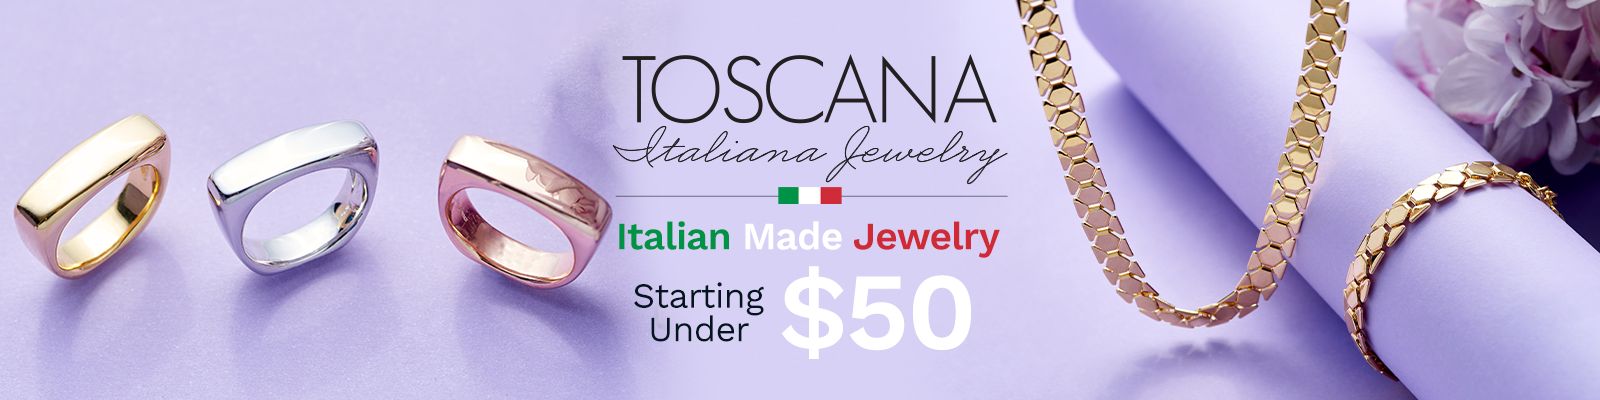 Toscana Italiana 212-519 212-511 212-510